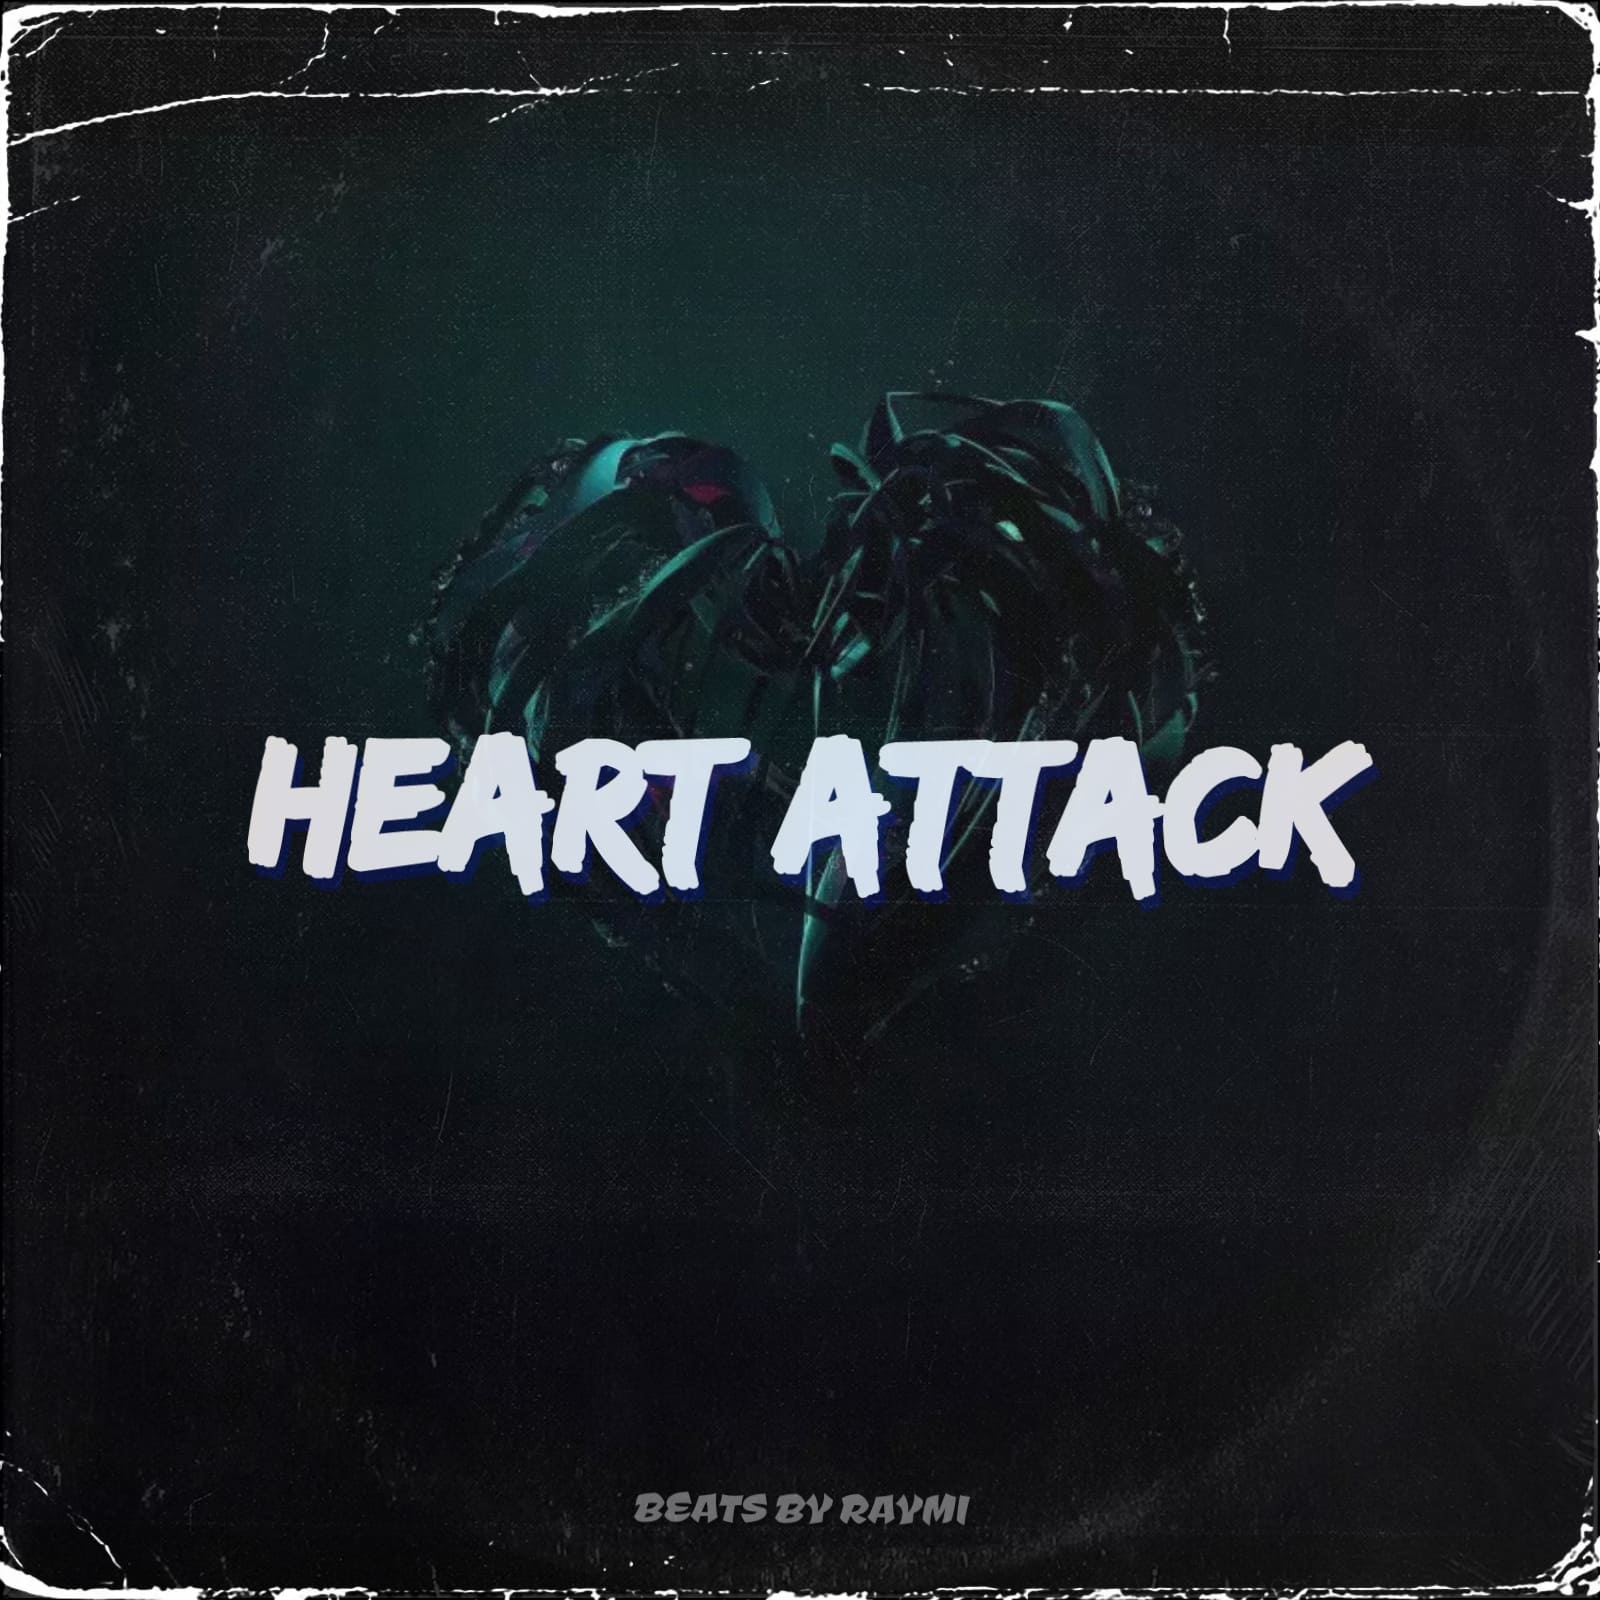 обложка бита, Raymi, музыка, cover, Heart attack (красивый, эмоциональный pop бит)